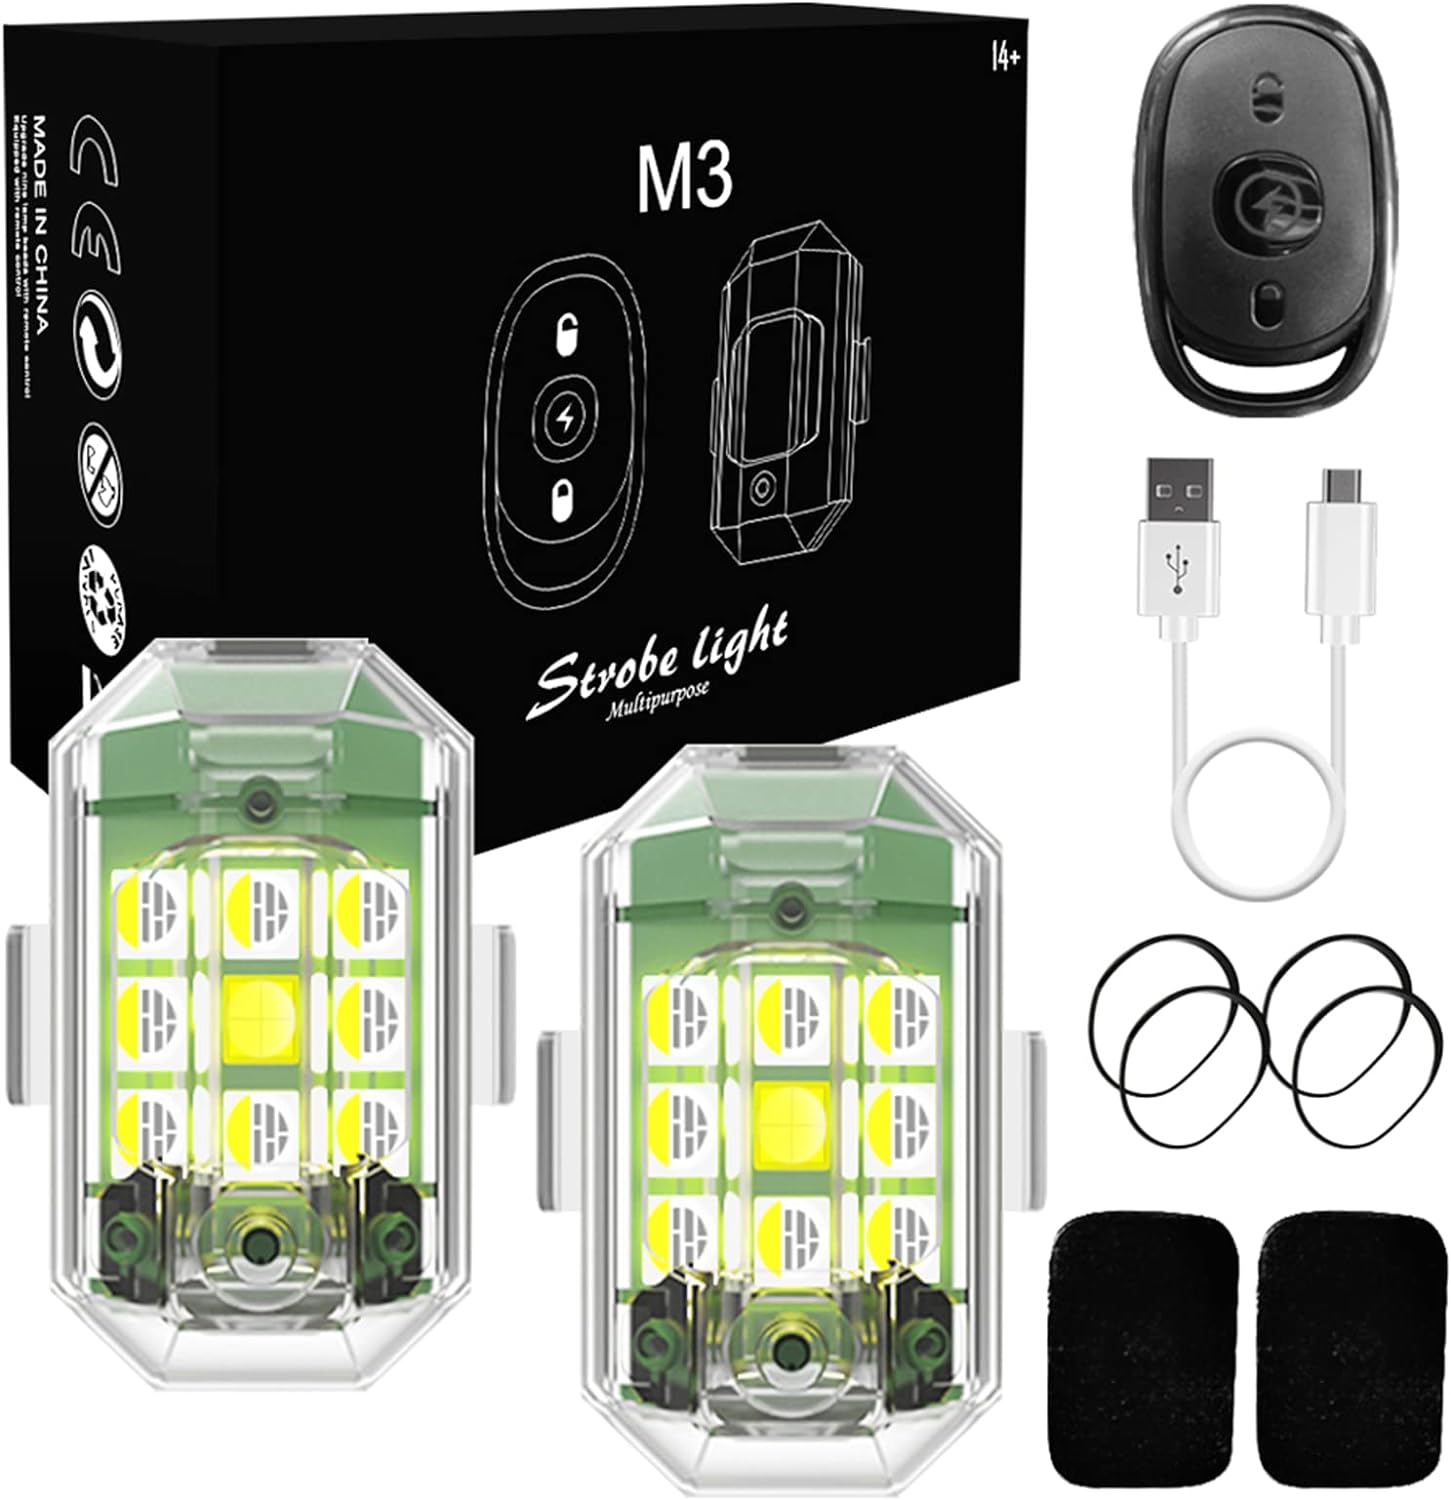 M3 Multipurpose Strobe Light